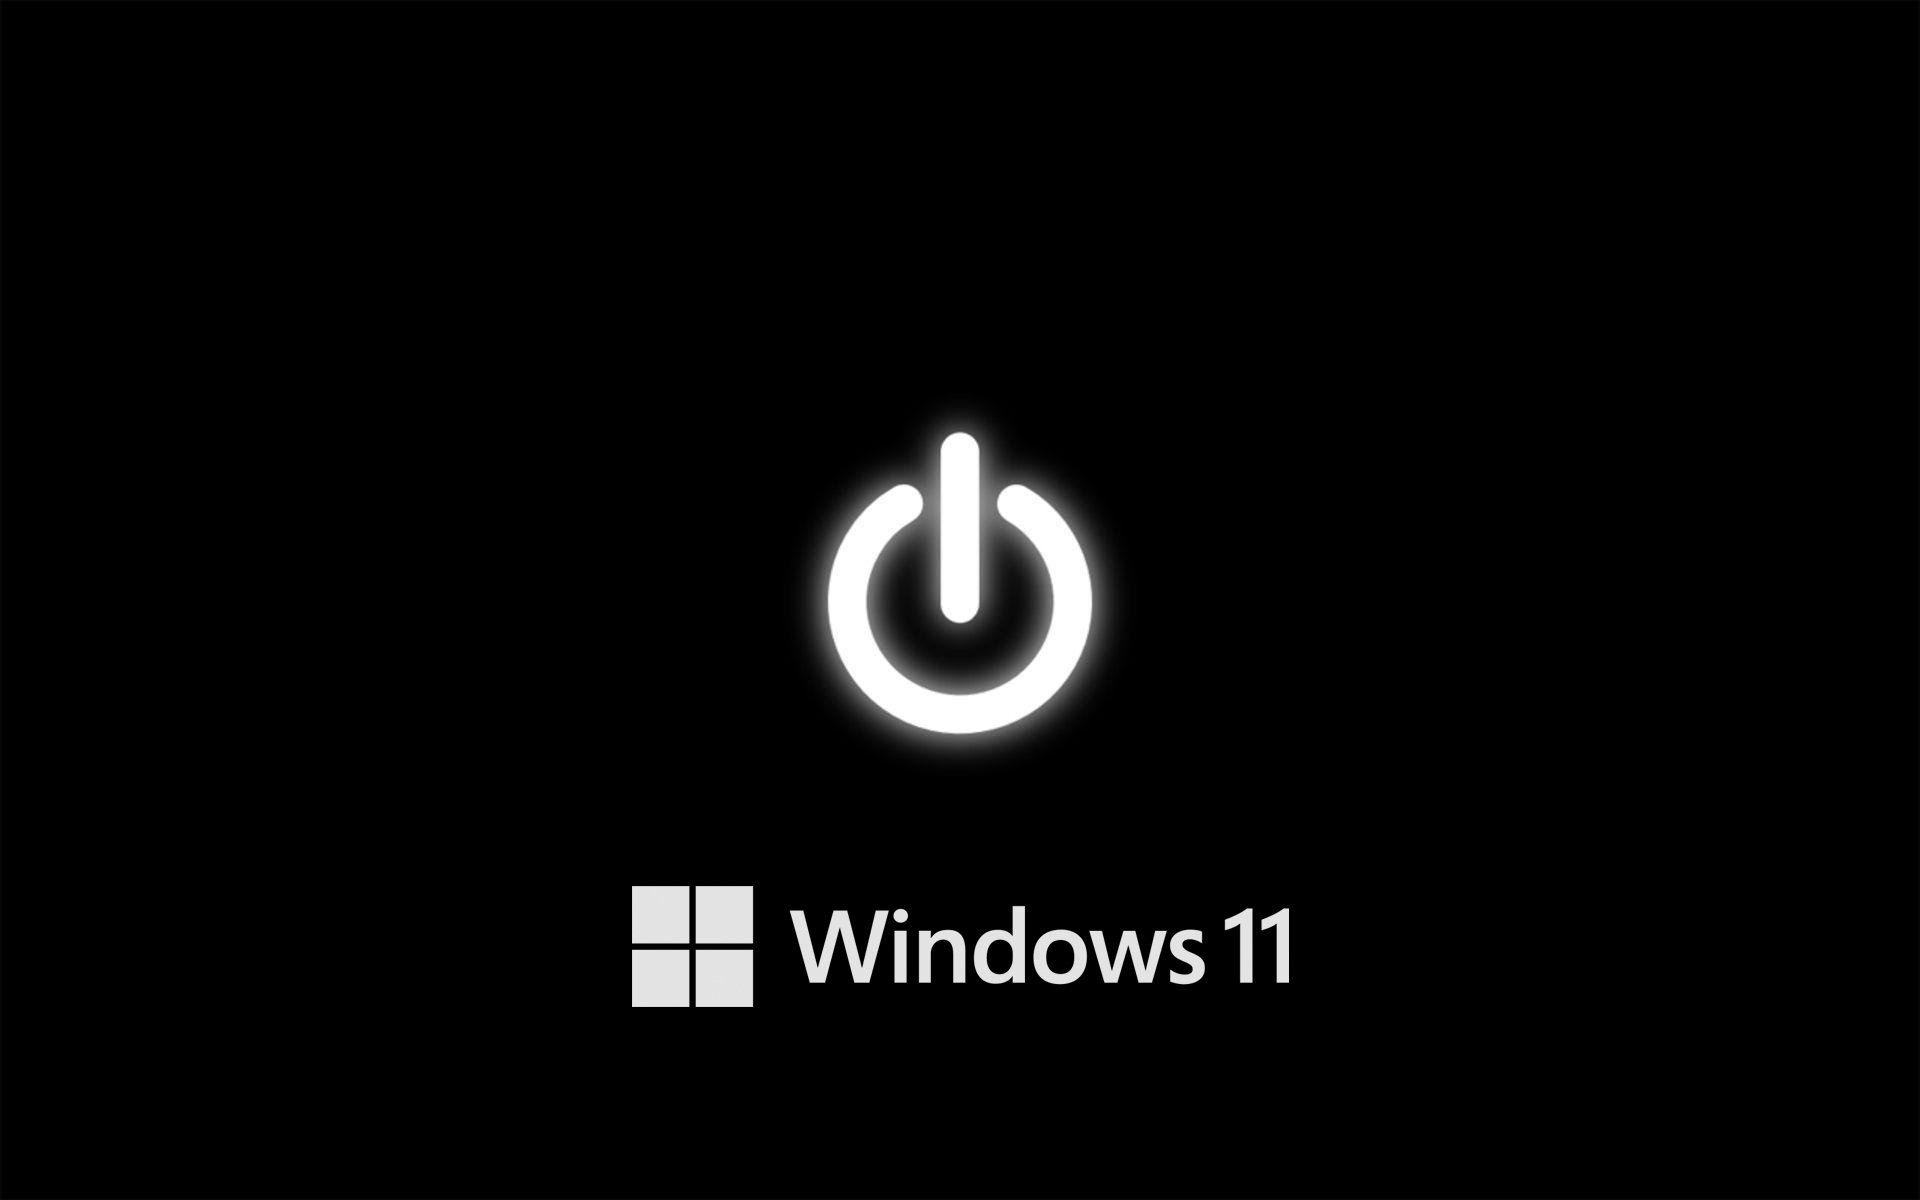 Những chiếc máy tính yêu thích sự toàn vẹn và nét đẹp đơn giản nhất sẽ không bỏ qua hình nền đen Windows 11 - wallpaper cave với nét hiện đại và độc đáo. Hình ảnh đen sần sùi tạo nên sự bí ẩn một cách rất tinh tế trên Desktop của bạn. Hãy cùng tìm hiểu và xem chi tiết ngay bạn nhé!